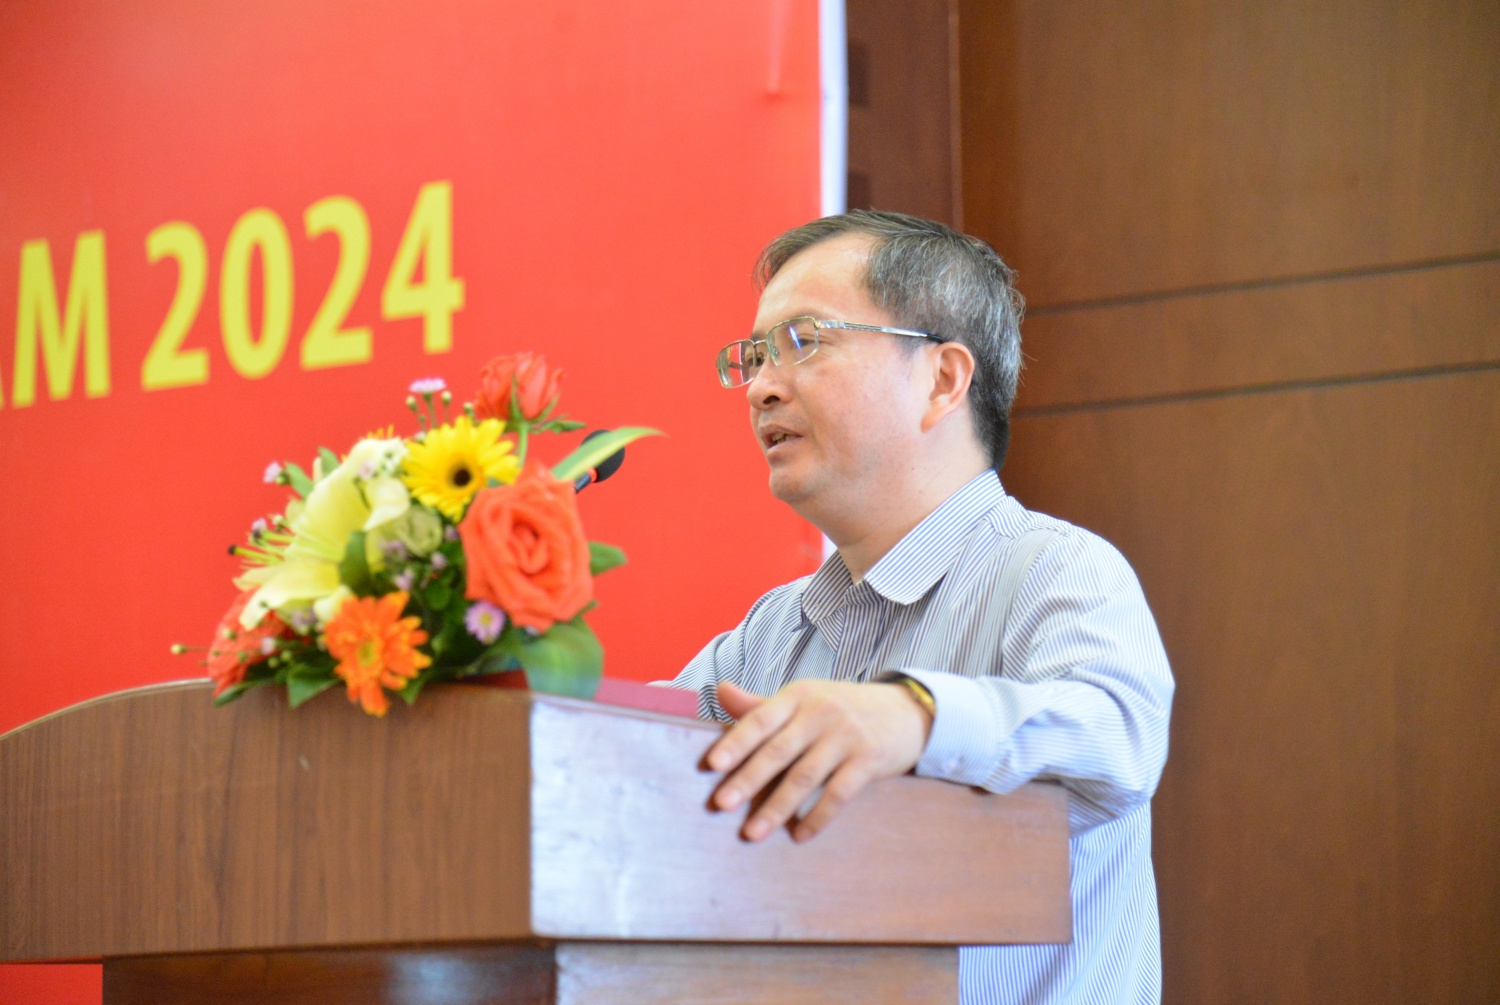 Khai giảng Lớp Bồi dưỡng nhận thức về Đảng năm 2024 khu vực Quảng Ngãi